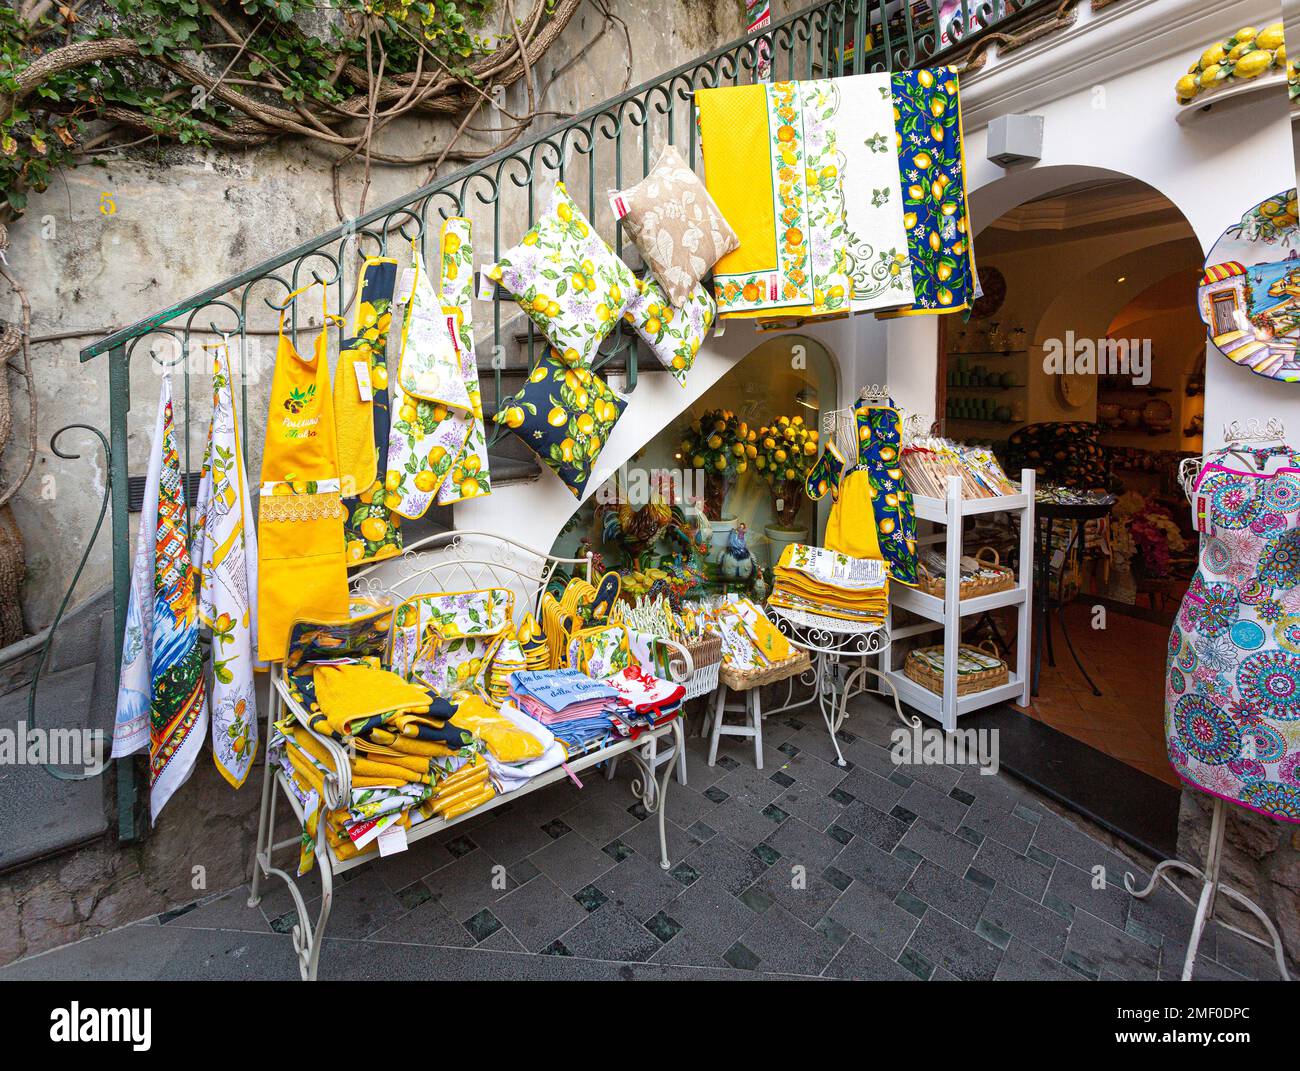 Positano, Italie, 23 avril 2015 : souvenirs locaux richement décorés avec des images de citron, qui est la fierté locale dans le village de la province de Positano Banque D'Images